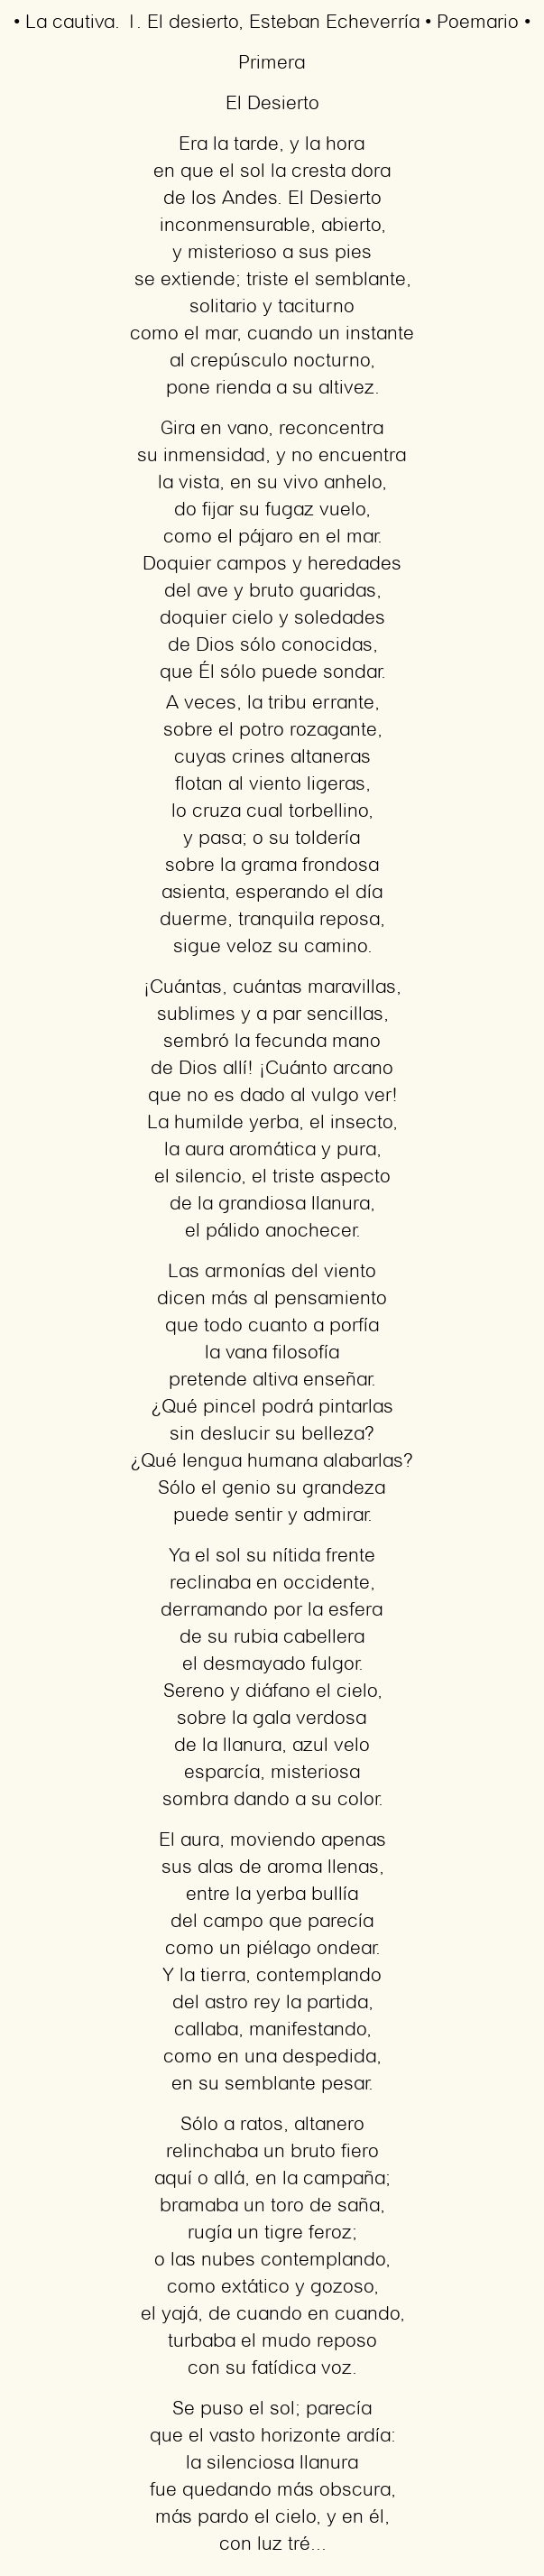 Imagen con el poema La cautiva. 1. El desierto, por Esteban Echeverría